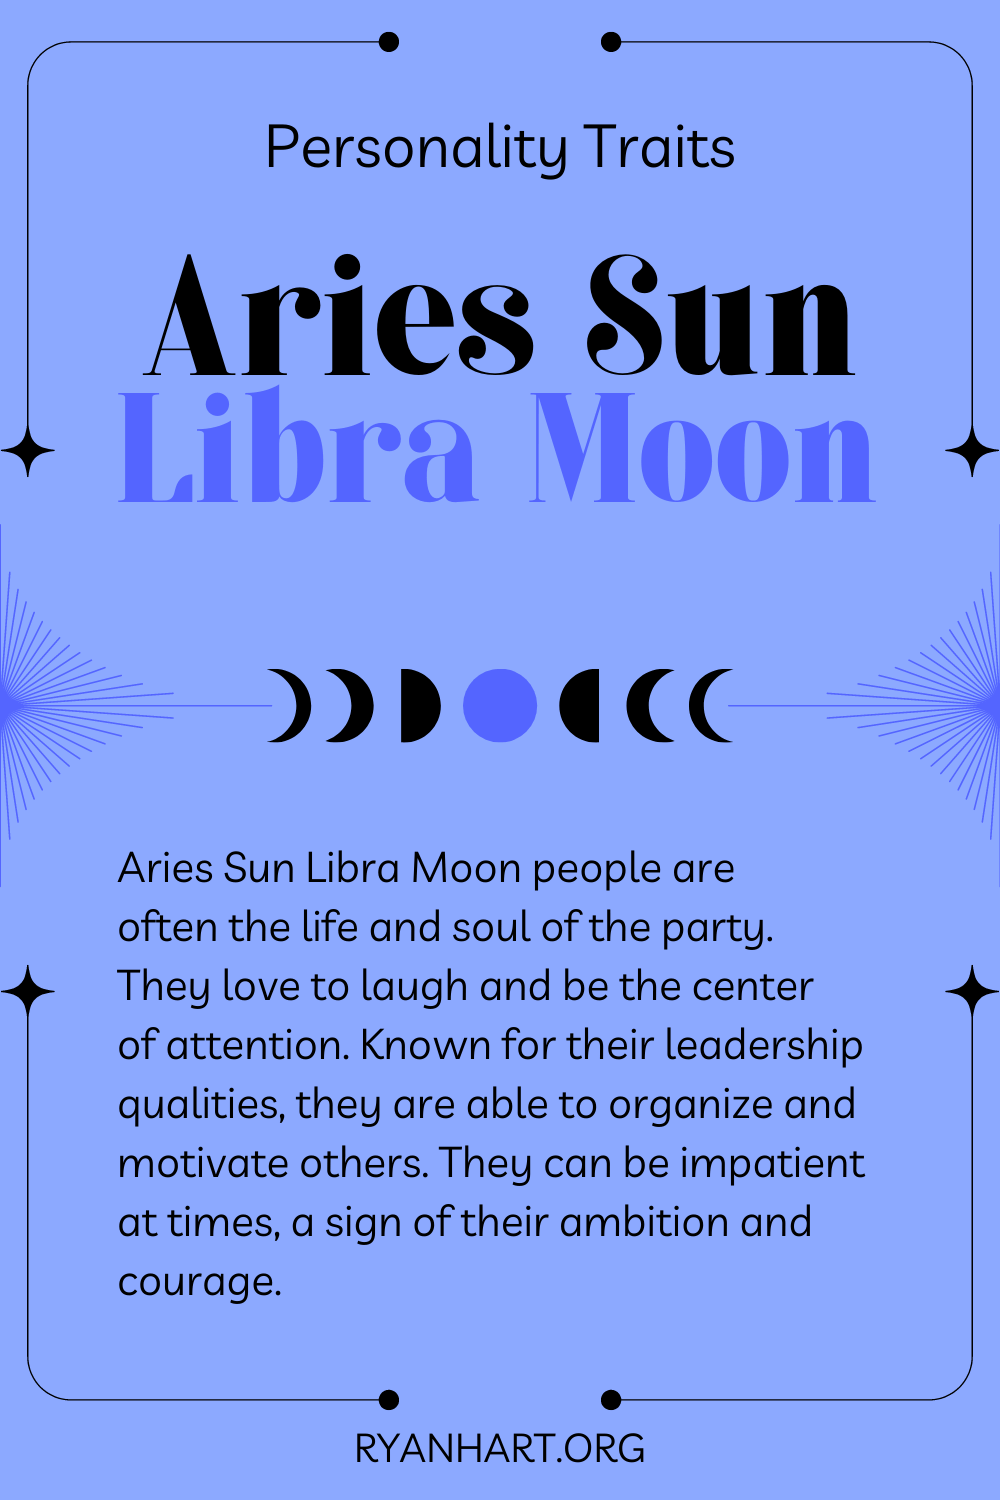 Aries Sun Libra Moon Description